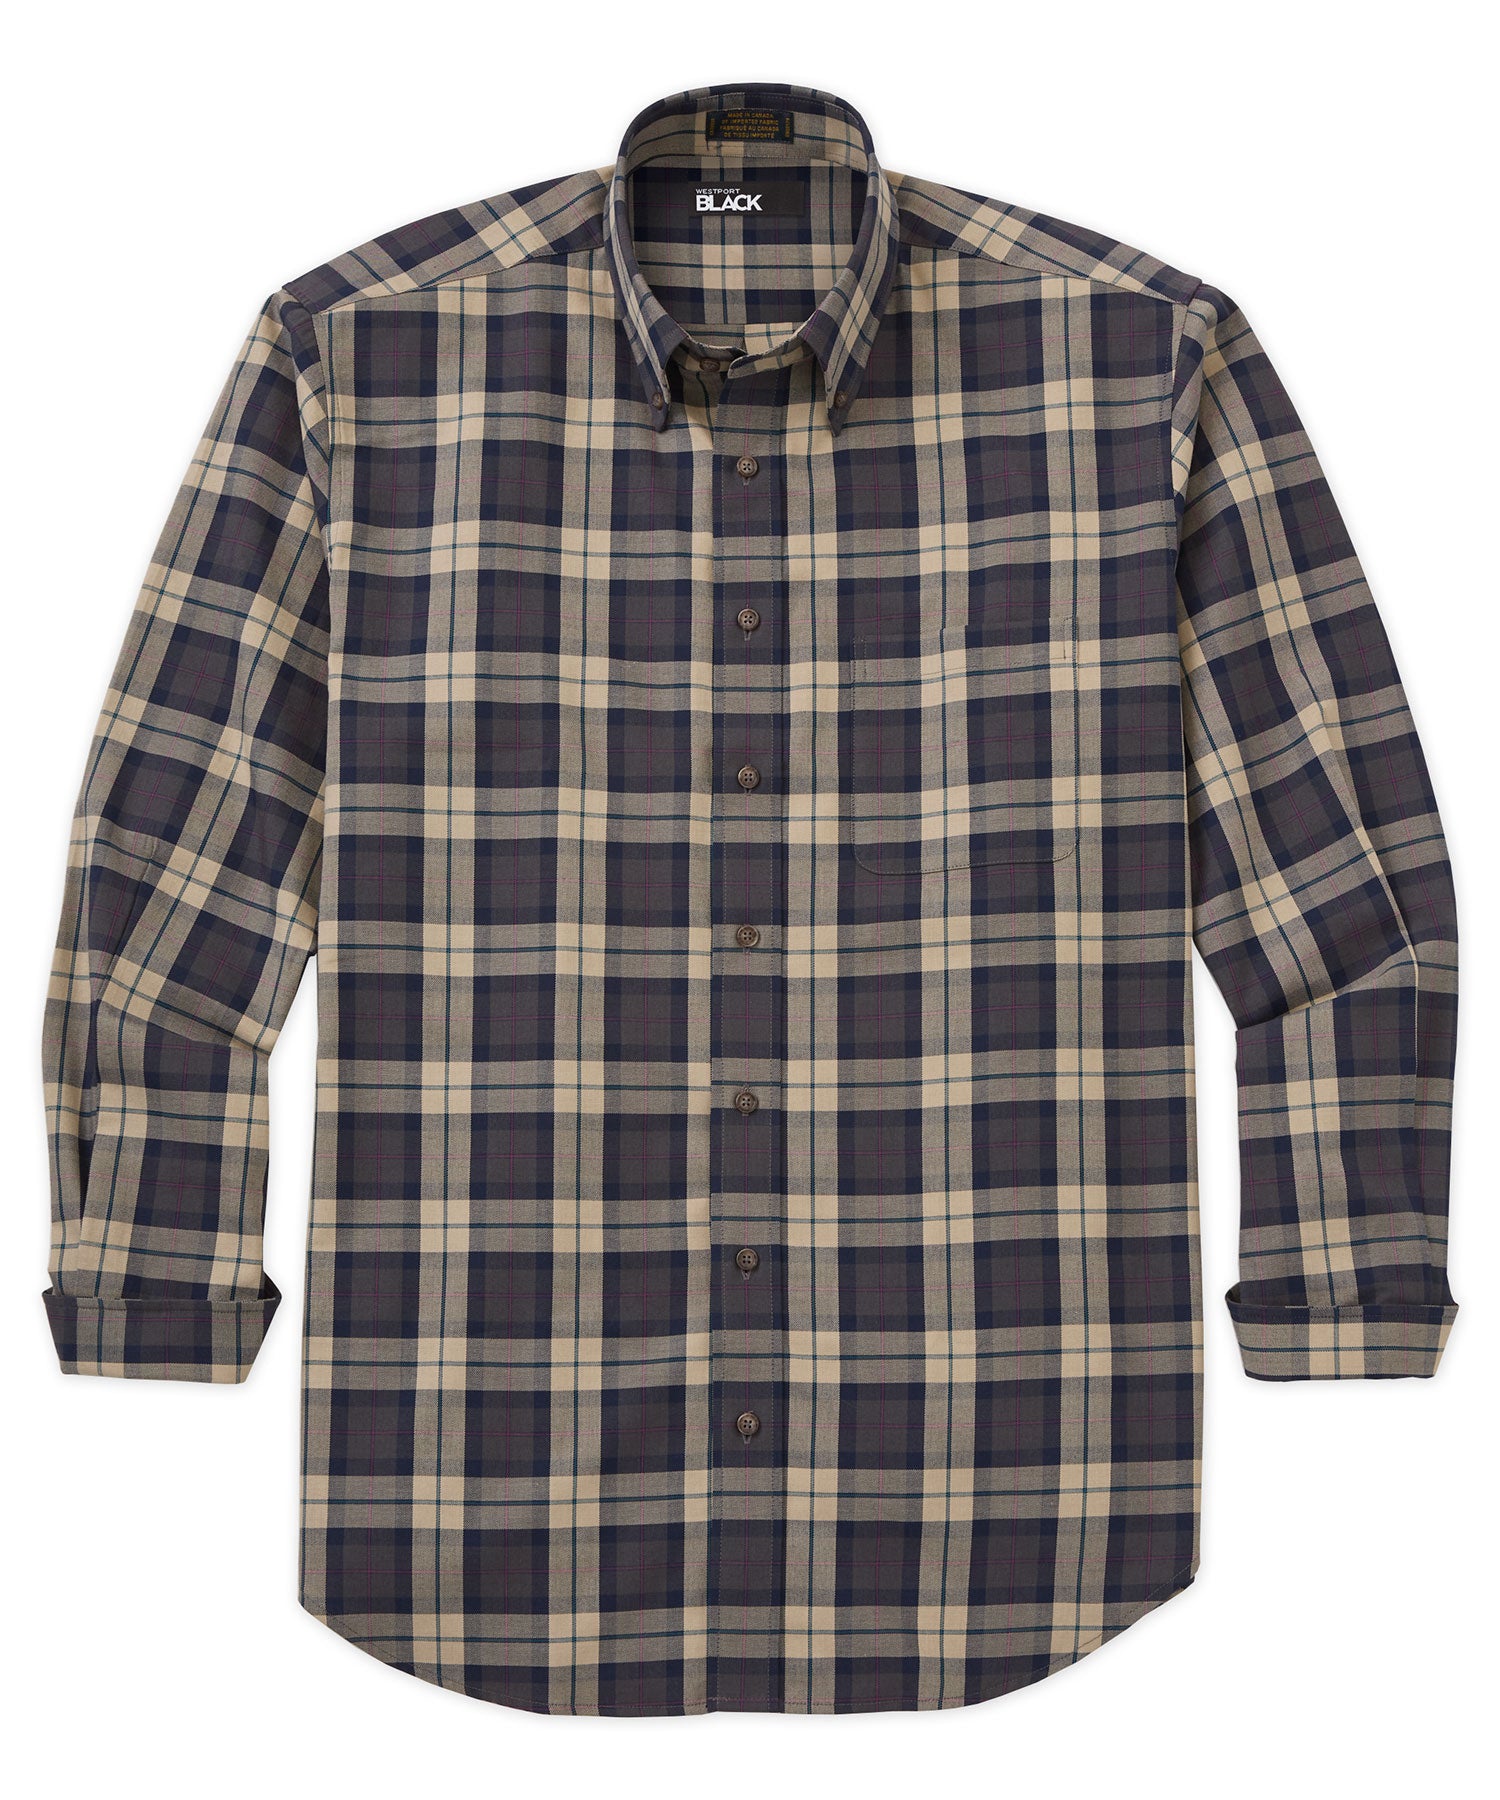 Westport Black Long Sleeve Cotton-Wool Sport Shirt, Men's Big & Tall